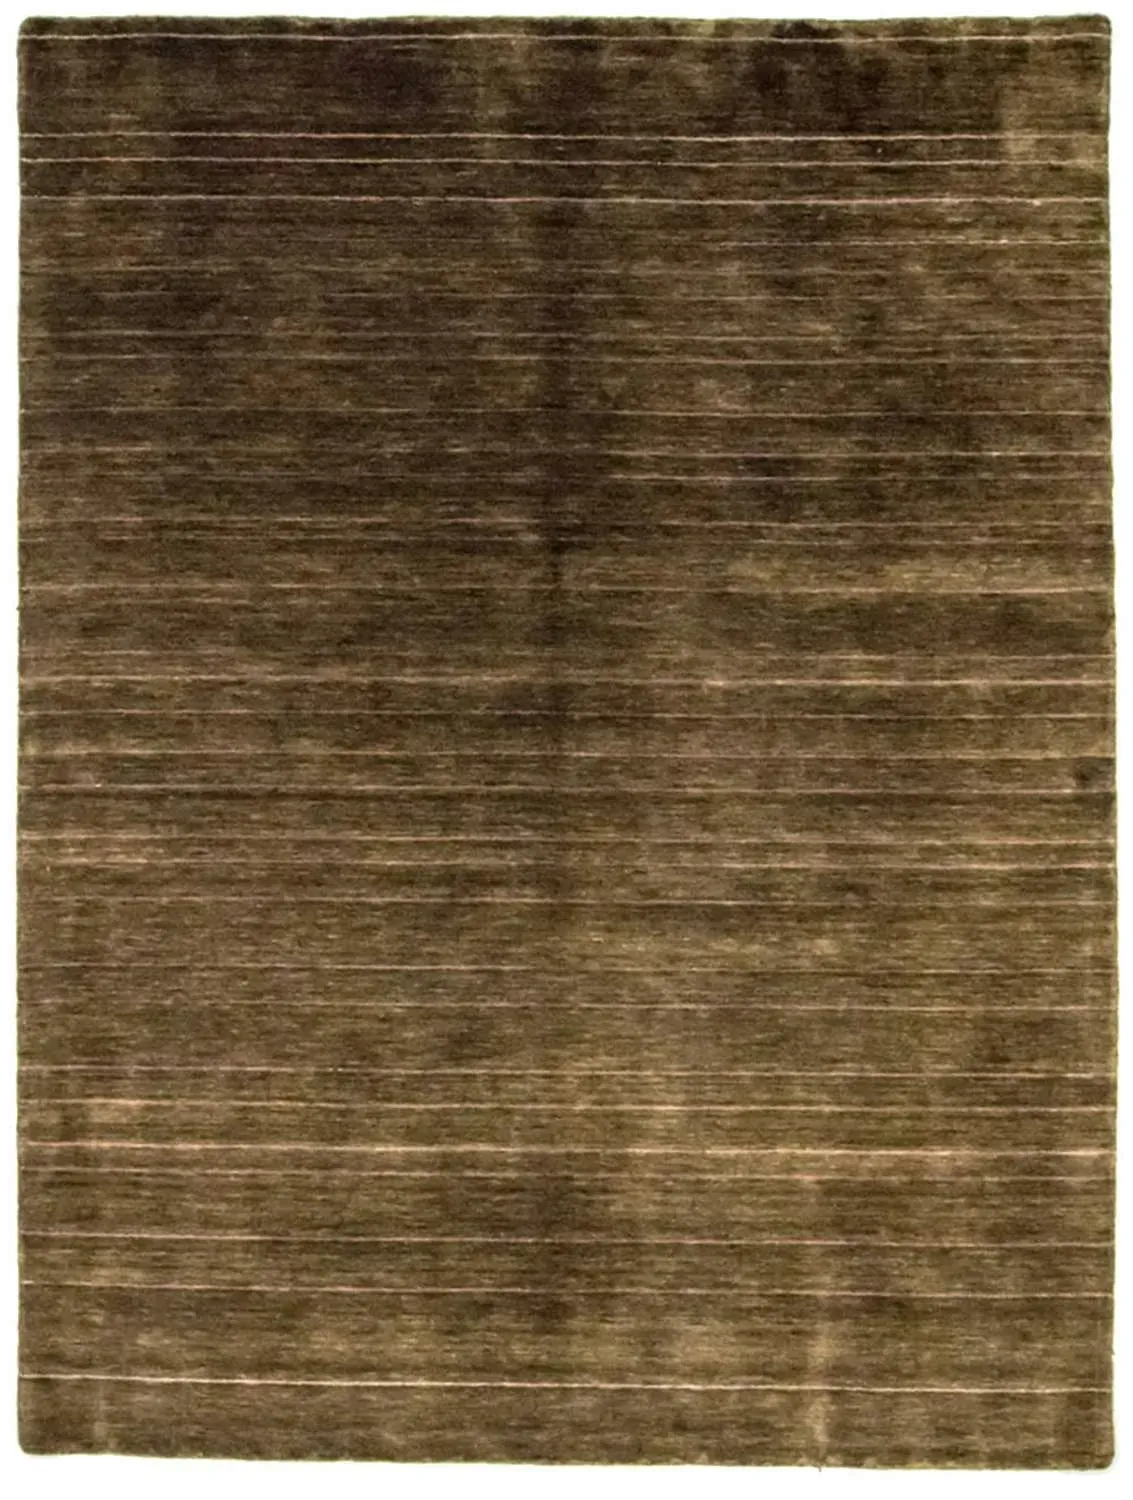 Morgenland Wollteppich - 220 x 160 cm - braun